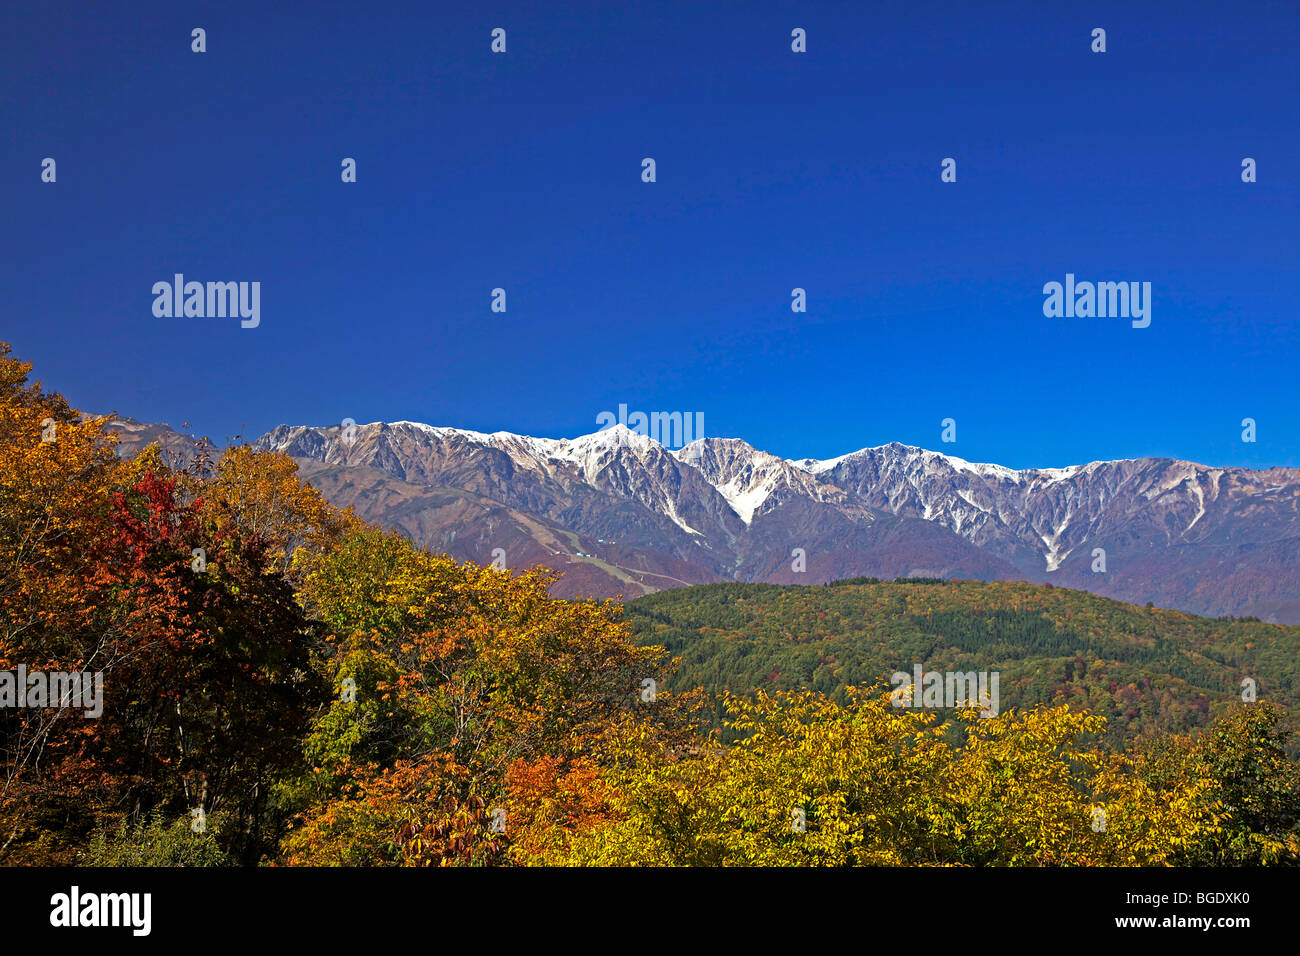 Hakuba mountain range in autumn, Nagano-ken, Japan Stock Photo